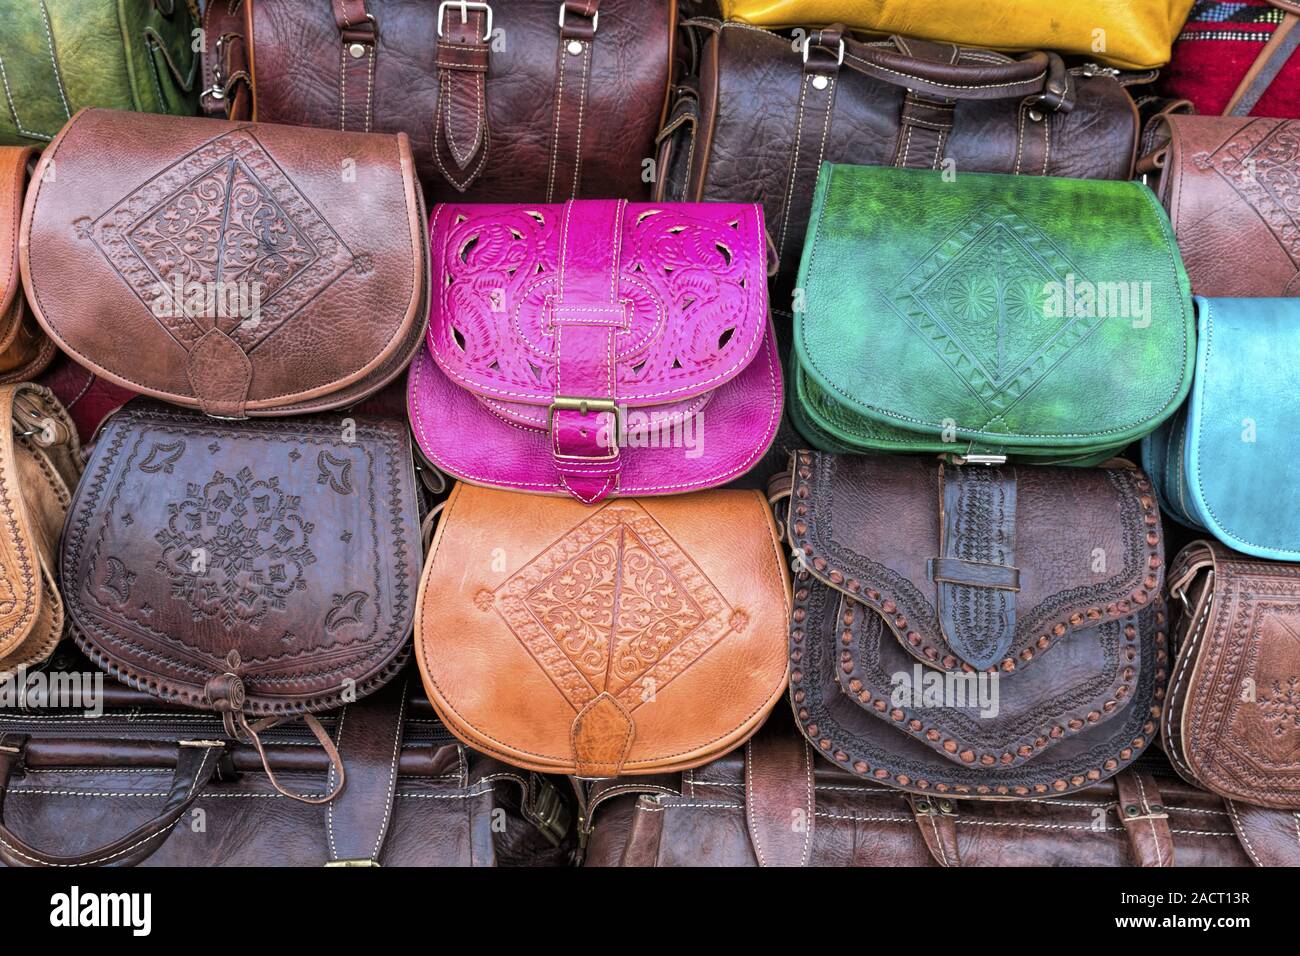 Leder Taschen auf einem Markt in Marokko Stockfotografie - Alamy